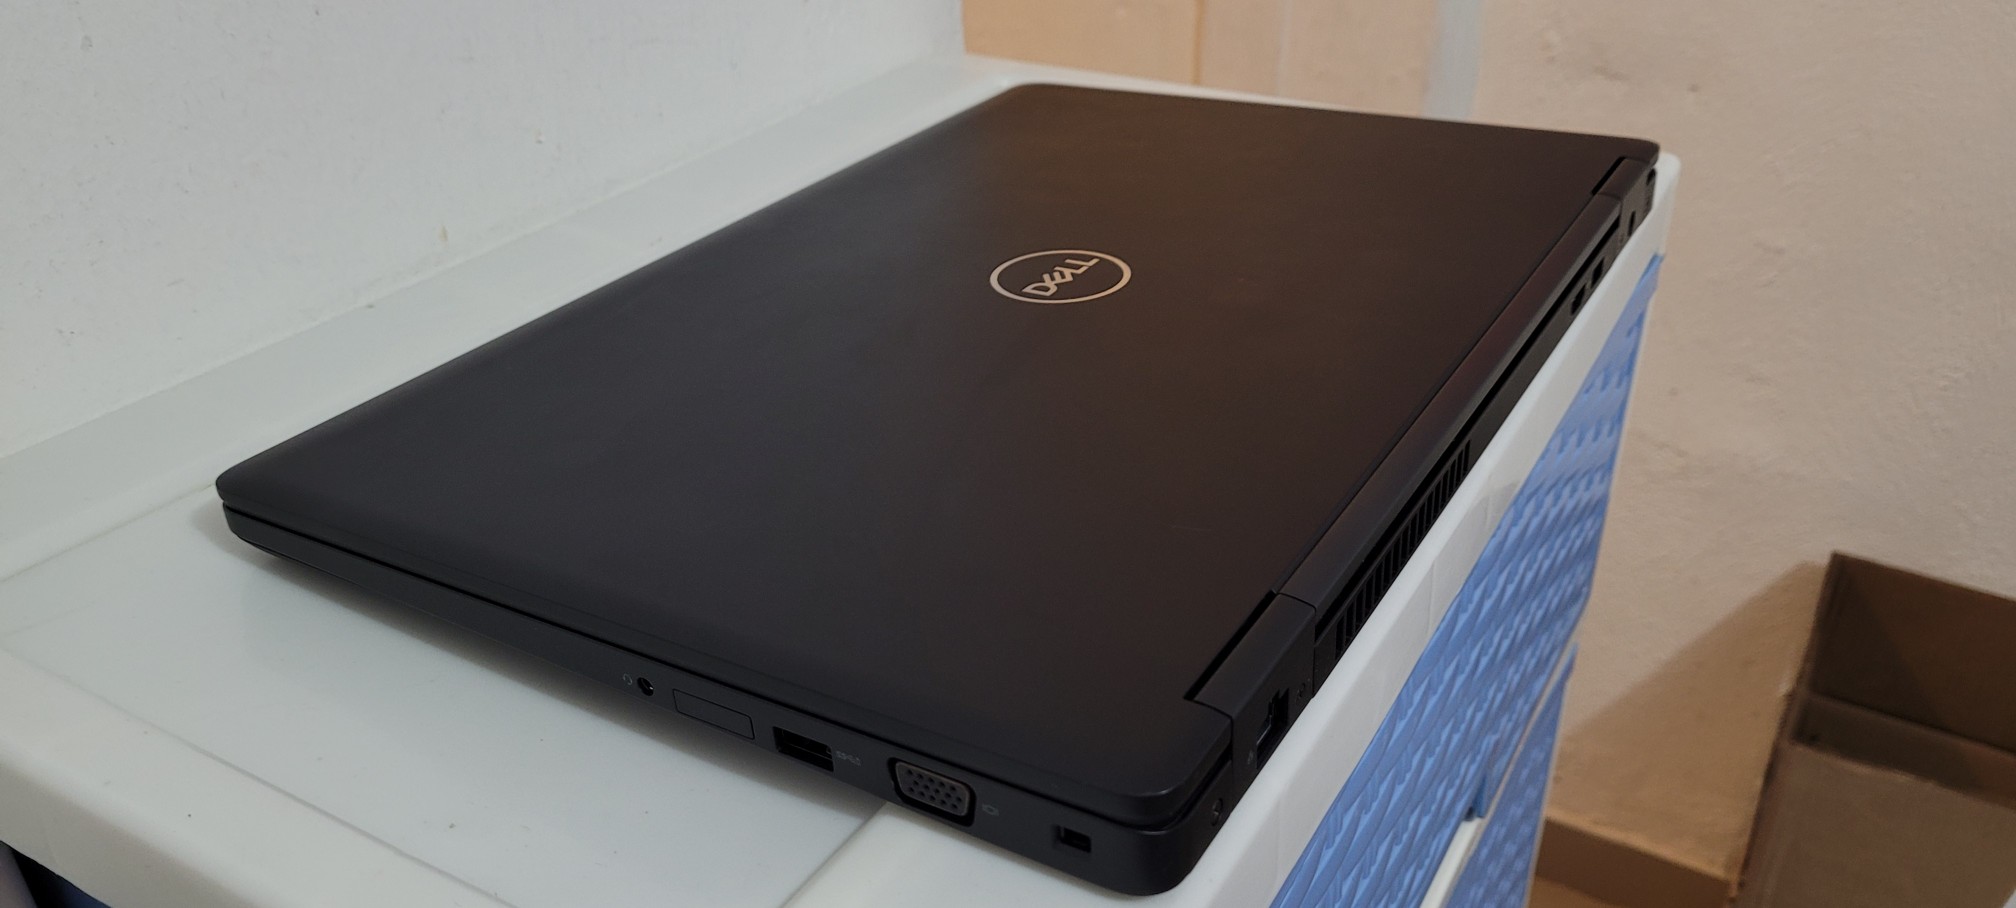 computadoras y laptops - Nueva Dell 5570 17 Pulg Core i7 6ta Gen Ram 16gb Disco 512gb SSD Video 8gb 2